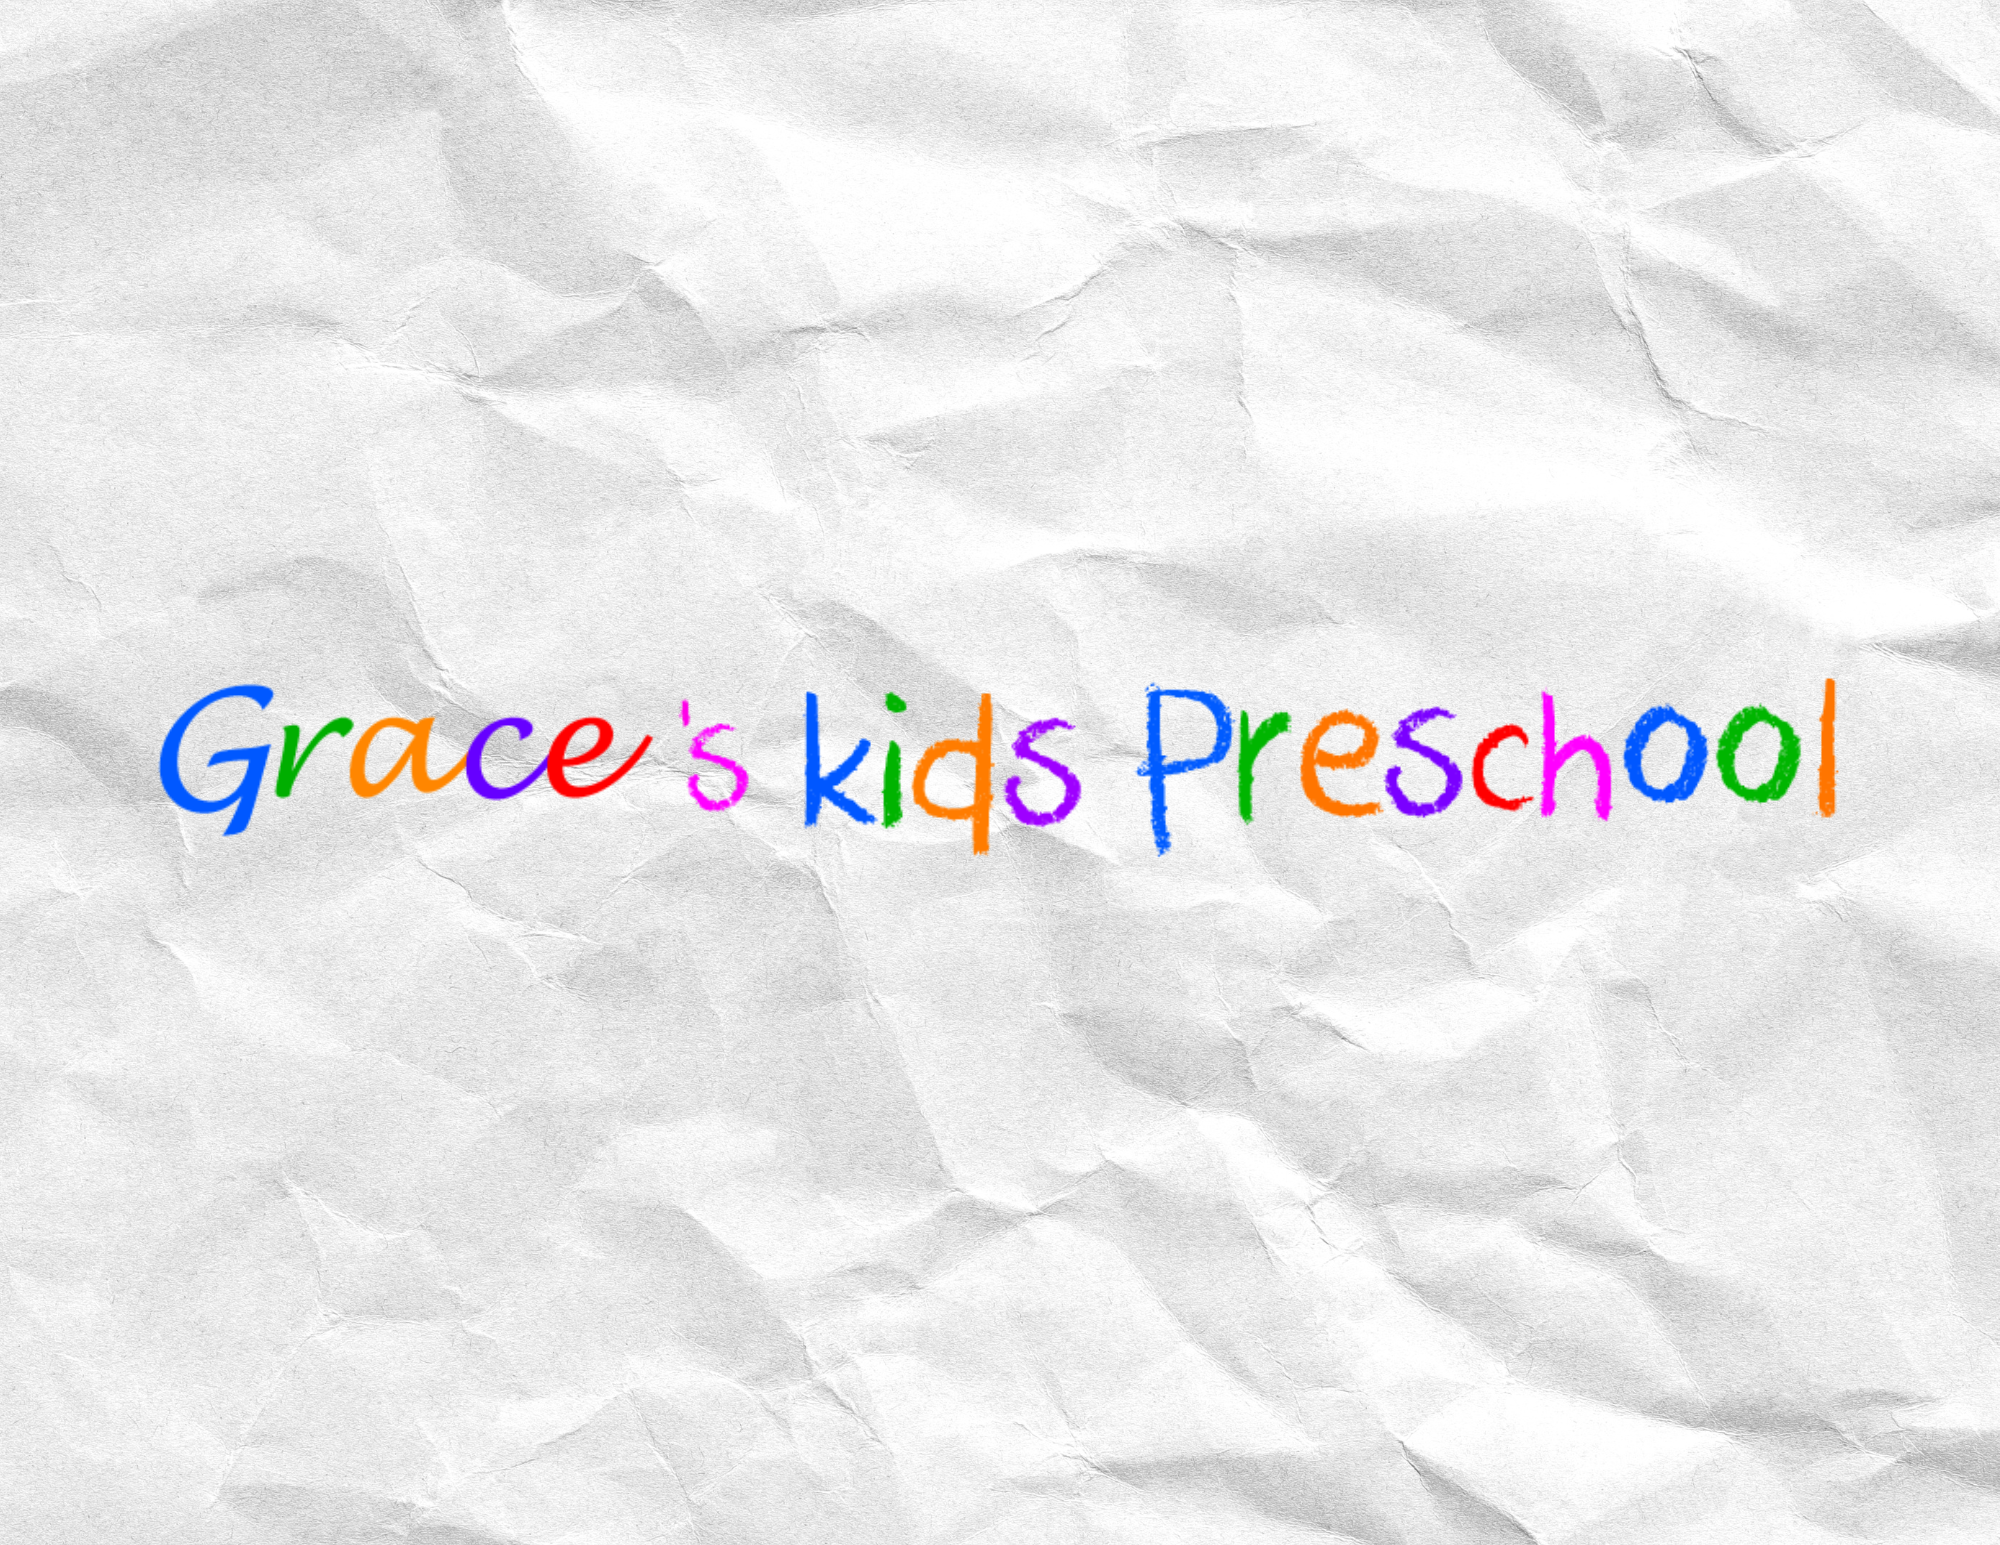 Grace's Kids Preschool